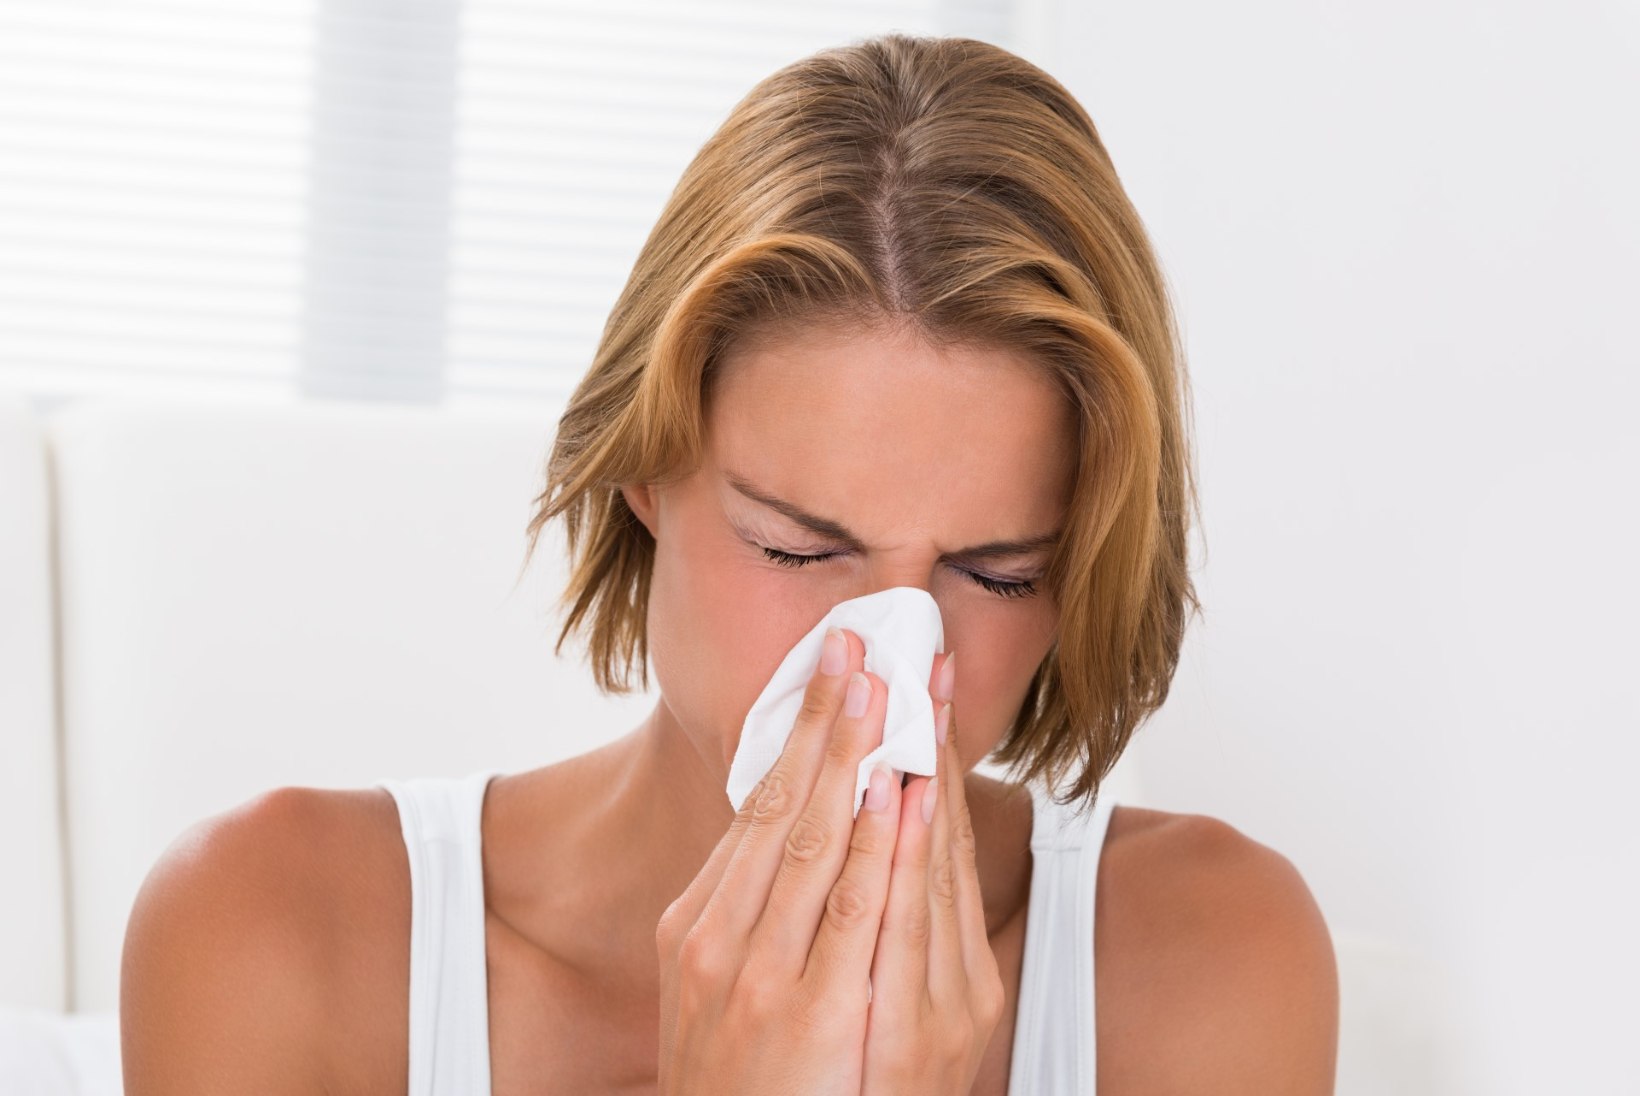 Levinud allergiaravimit apteegist paari kuu jooksul osta ei saa